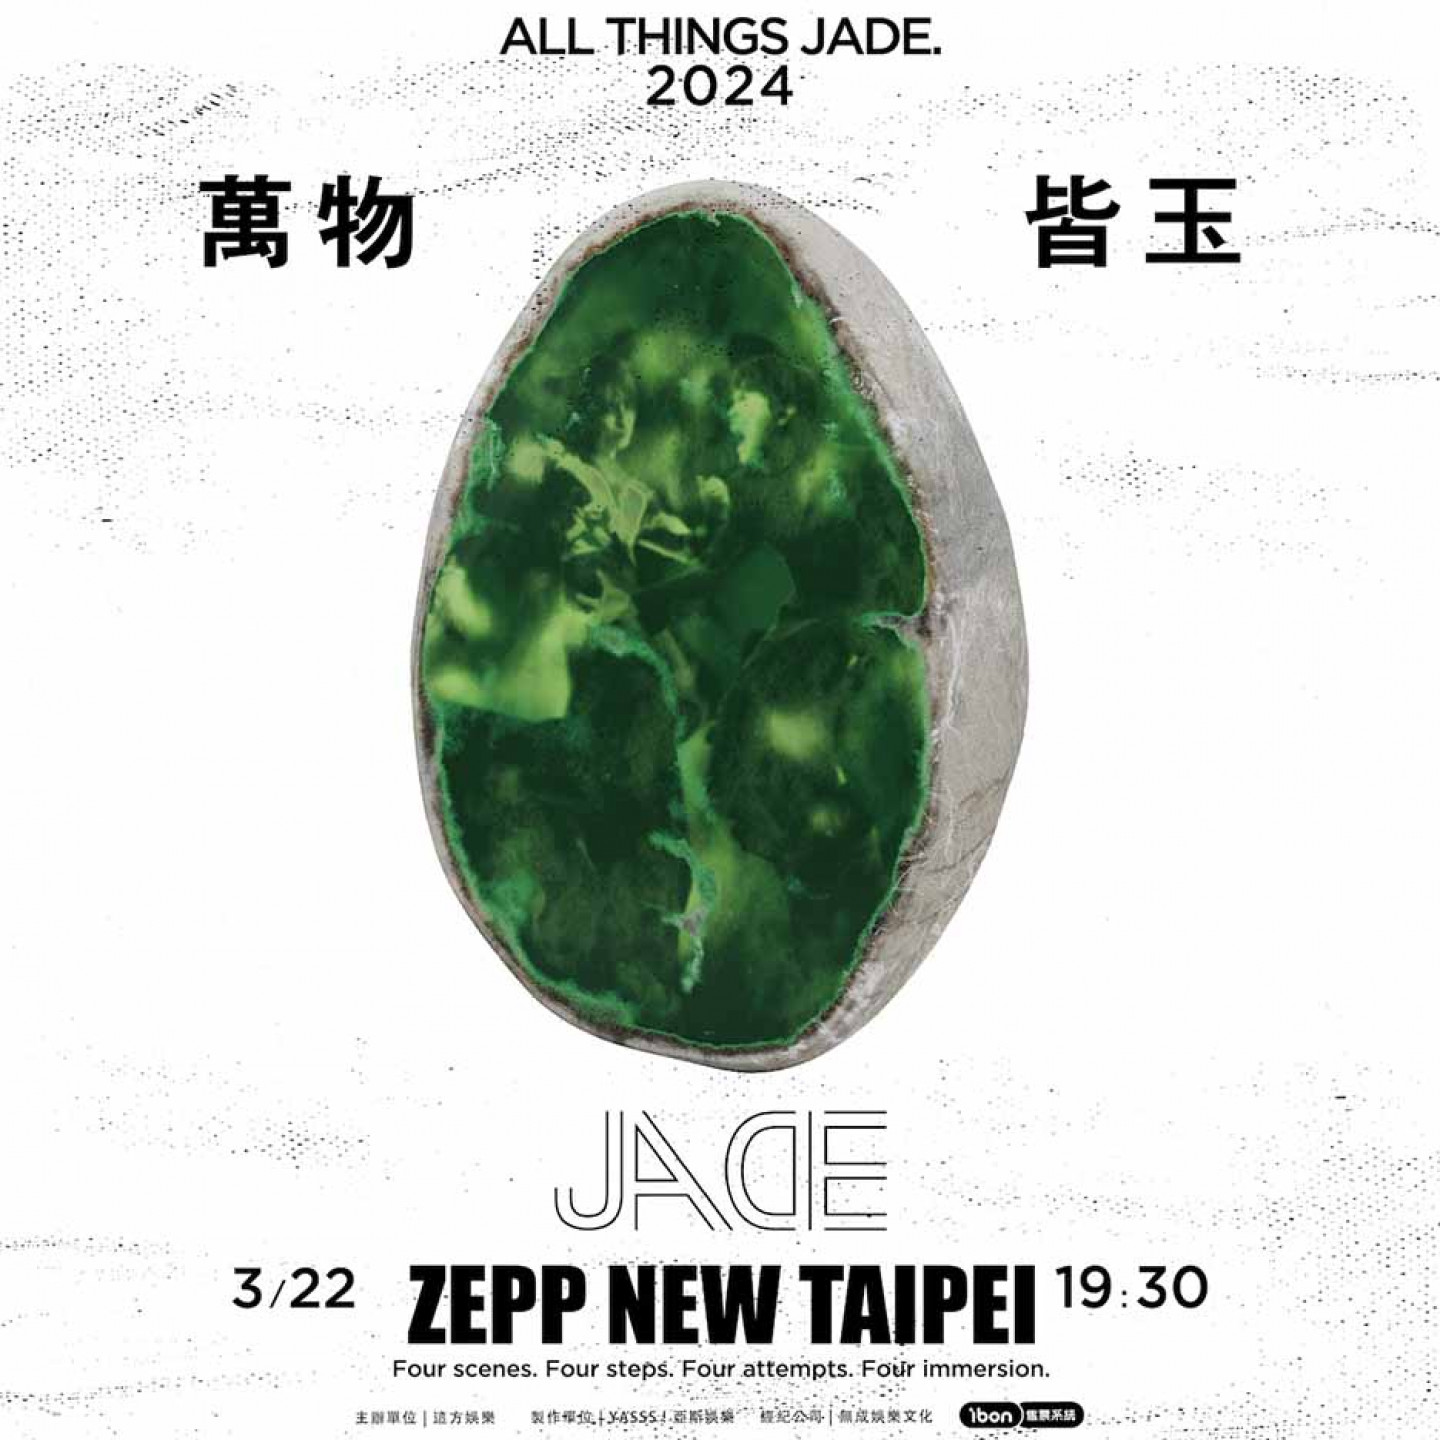 01-金曲樂團JADE《萬物皆玉》 Zepp New Taipei 演唱會主視覺